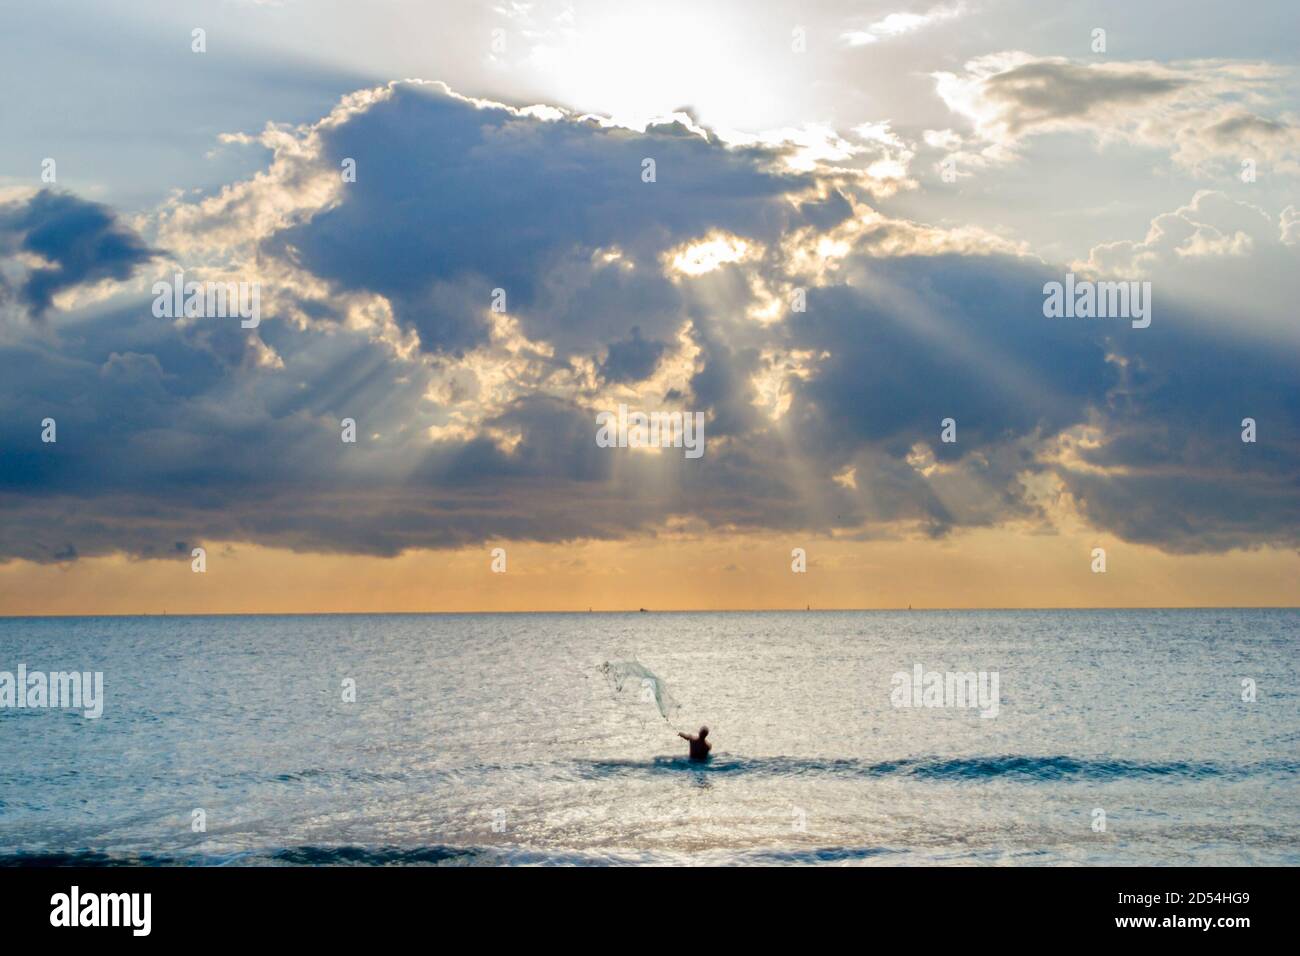 Miami Beach Florida,Atlantic Ocean surf,casting tossant filet de pêche, homme d'eau silhouette silhouetted, nuages, Banque D'Images